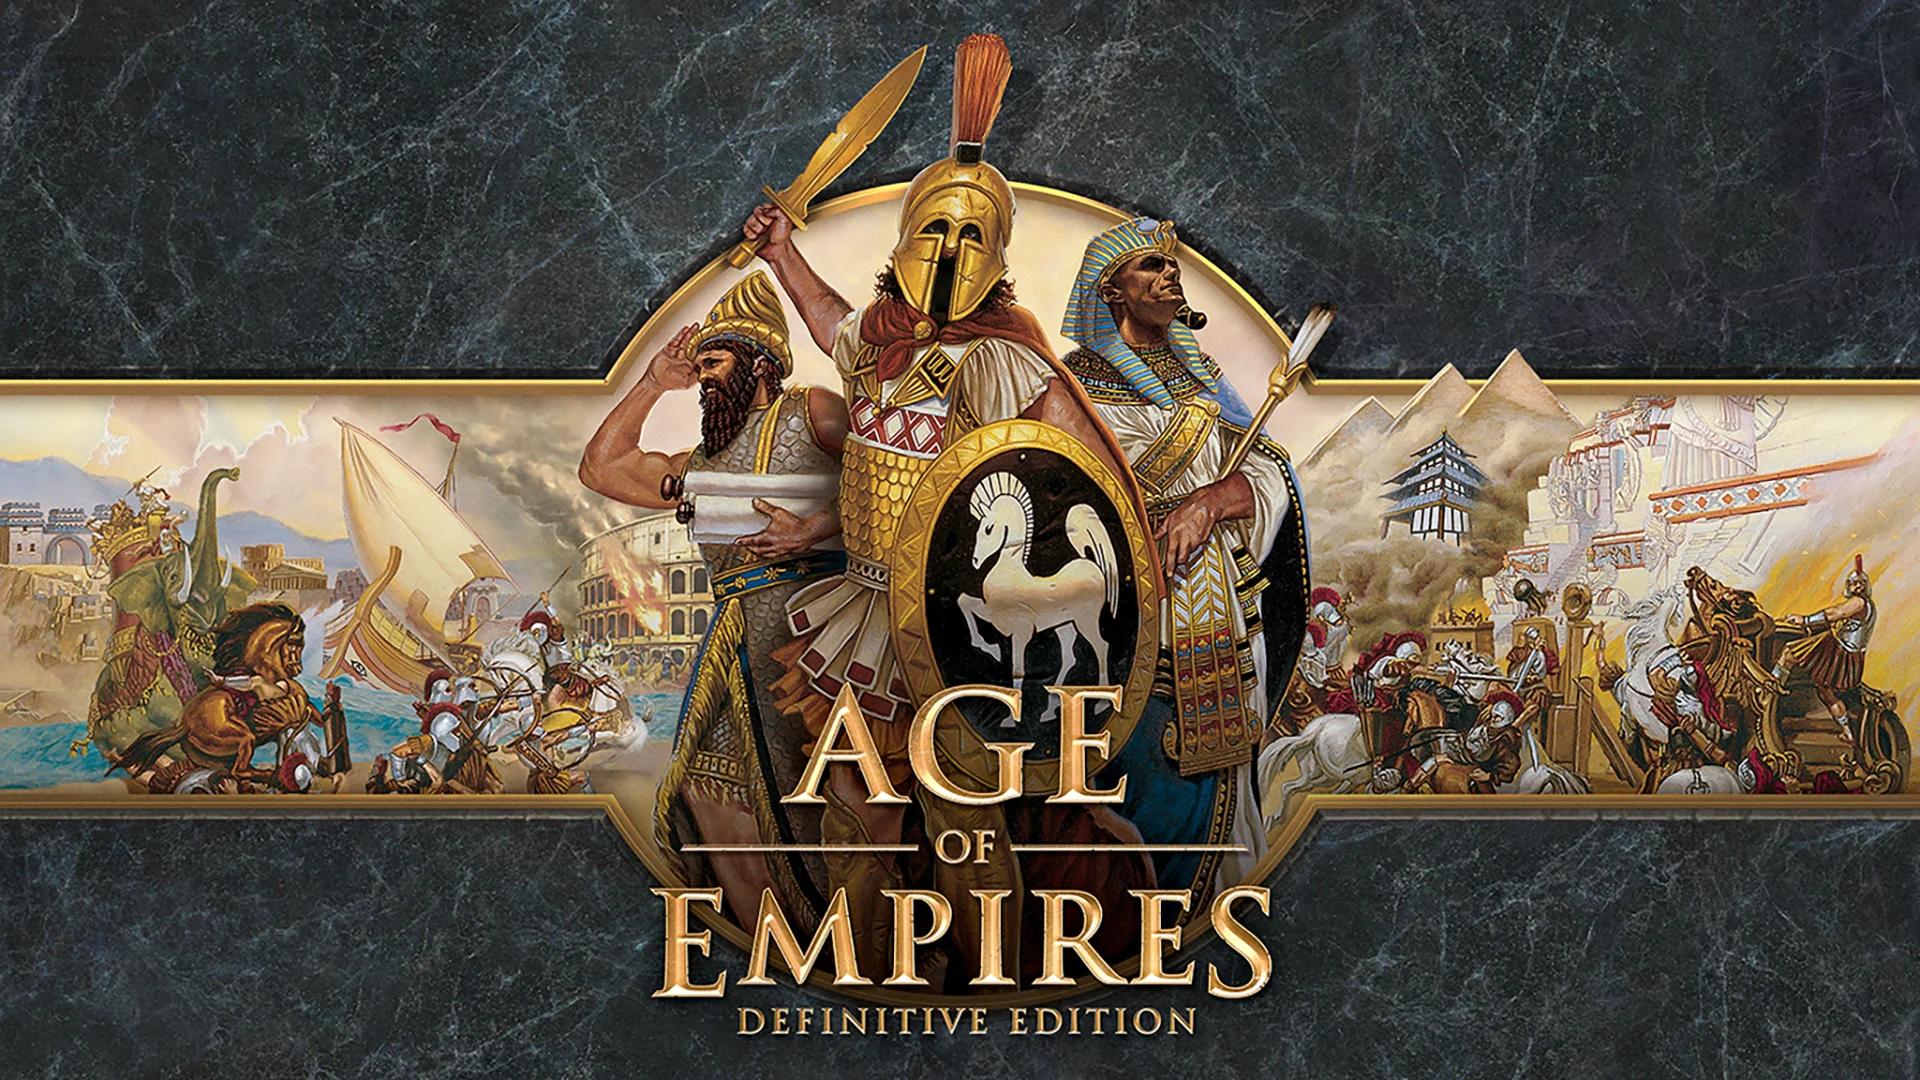 С Age of Empires когда-то давно начался отдельный поджанр RTS, который утратил популярность уже в середине нулевых, а нынче многими и вовсе признается мертвым (в отличие от 4X-стратегий, коим удается выживать и развиваться). Age of Empires: Definitive Edition — всего лишь ремастер самой первой игры в серии, и вряд ли восставший покойник подходит для встряски и оживления всего жанра. Хотя покойник этот симпатичен лицом и почти не пахнет дурно, внутри него еще осталась гниль.